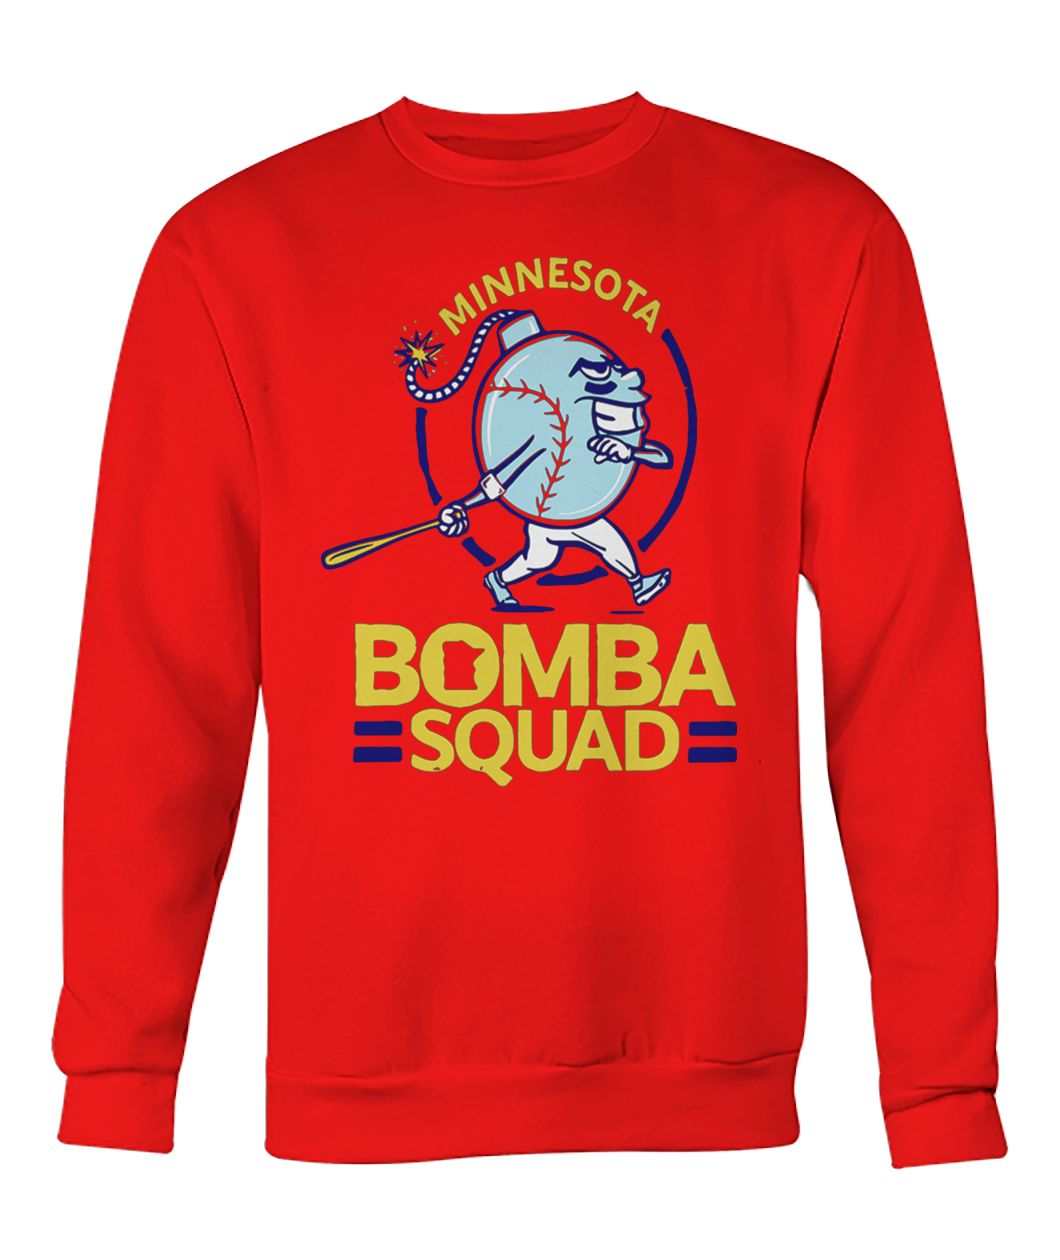 Minnesota bomba squad crew neck sweatshirt